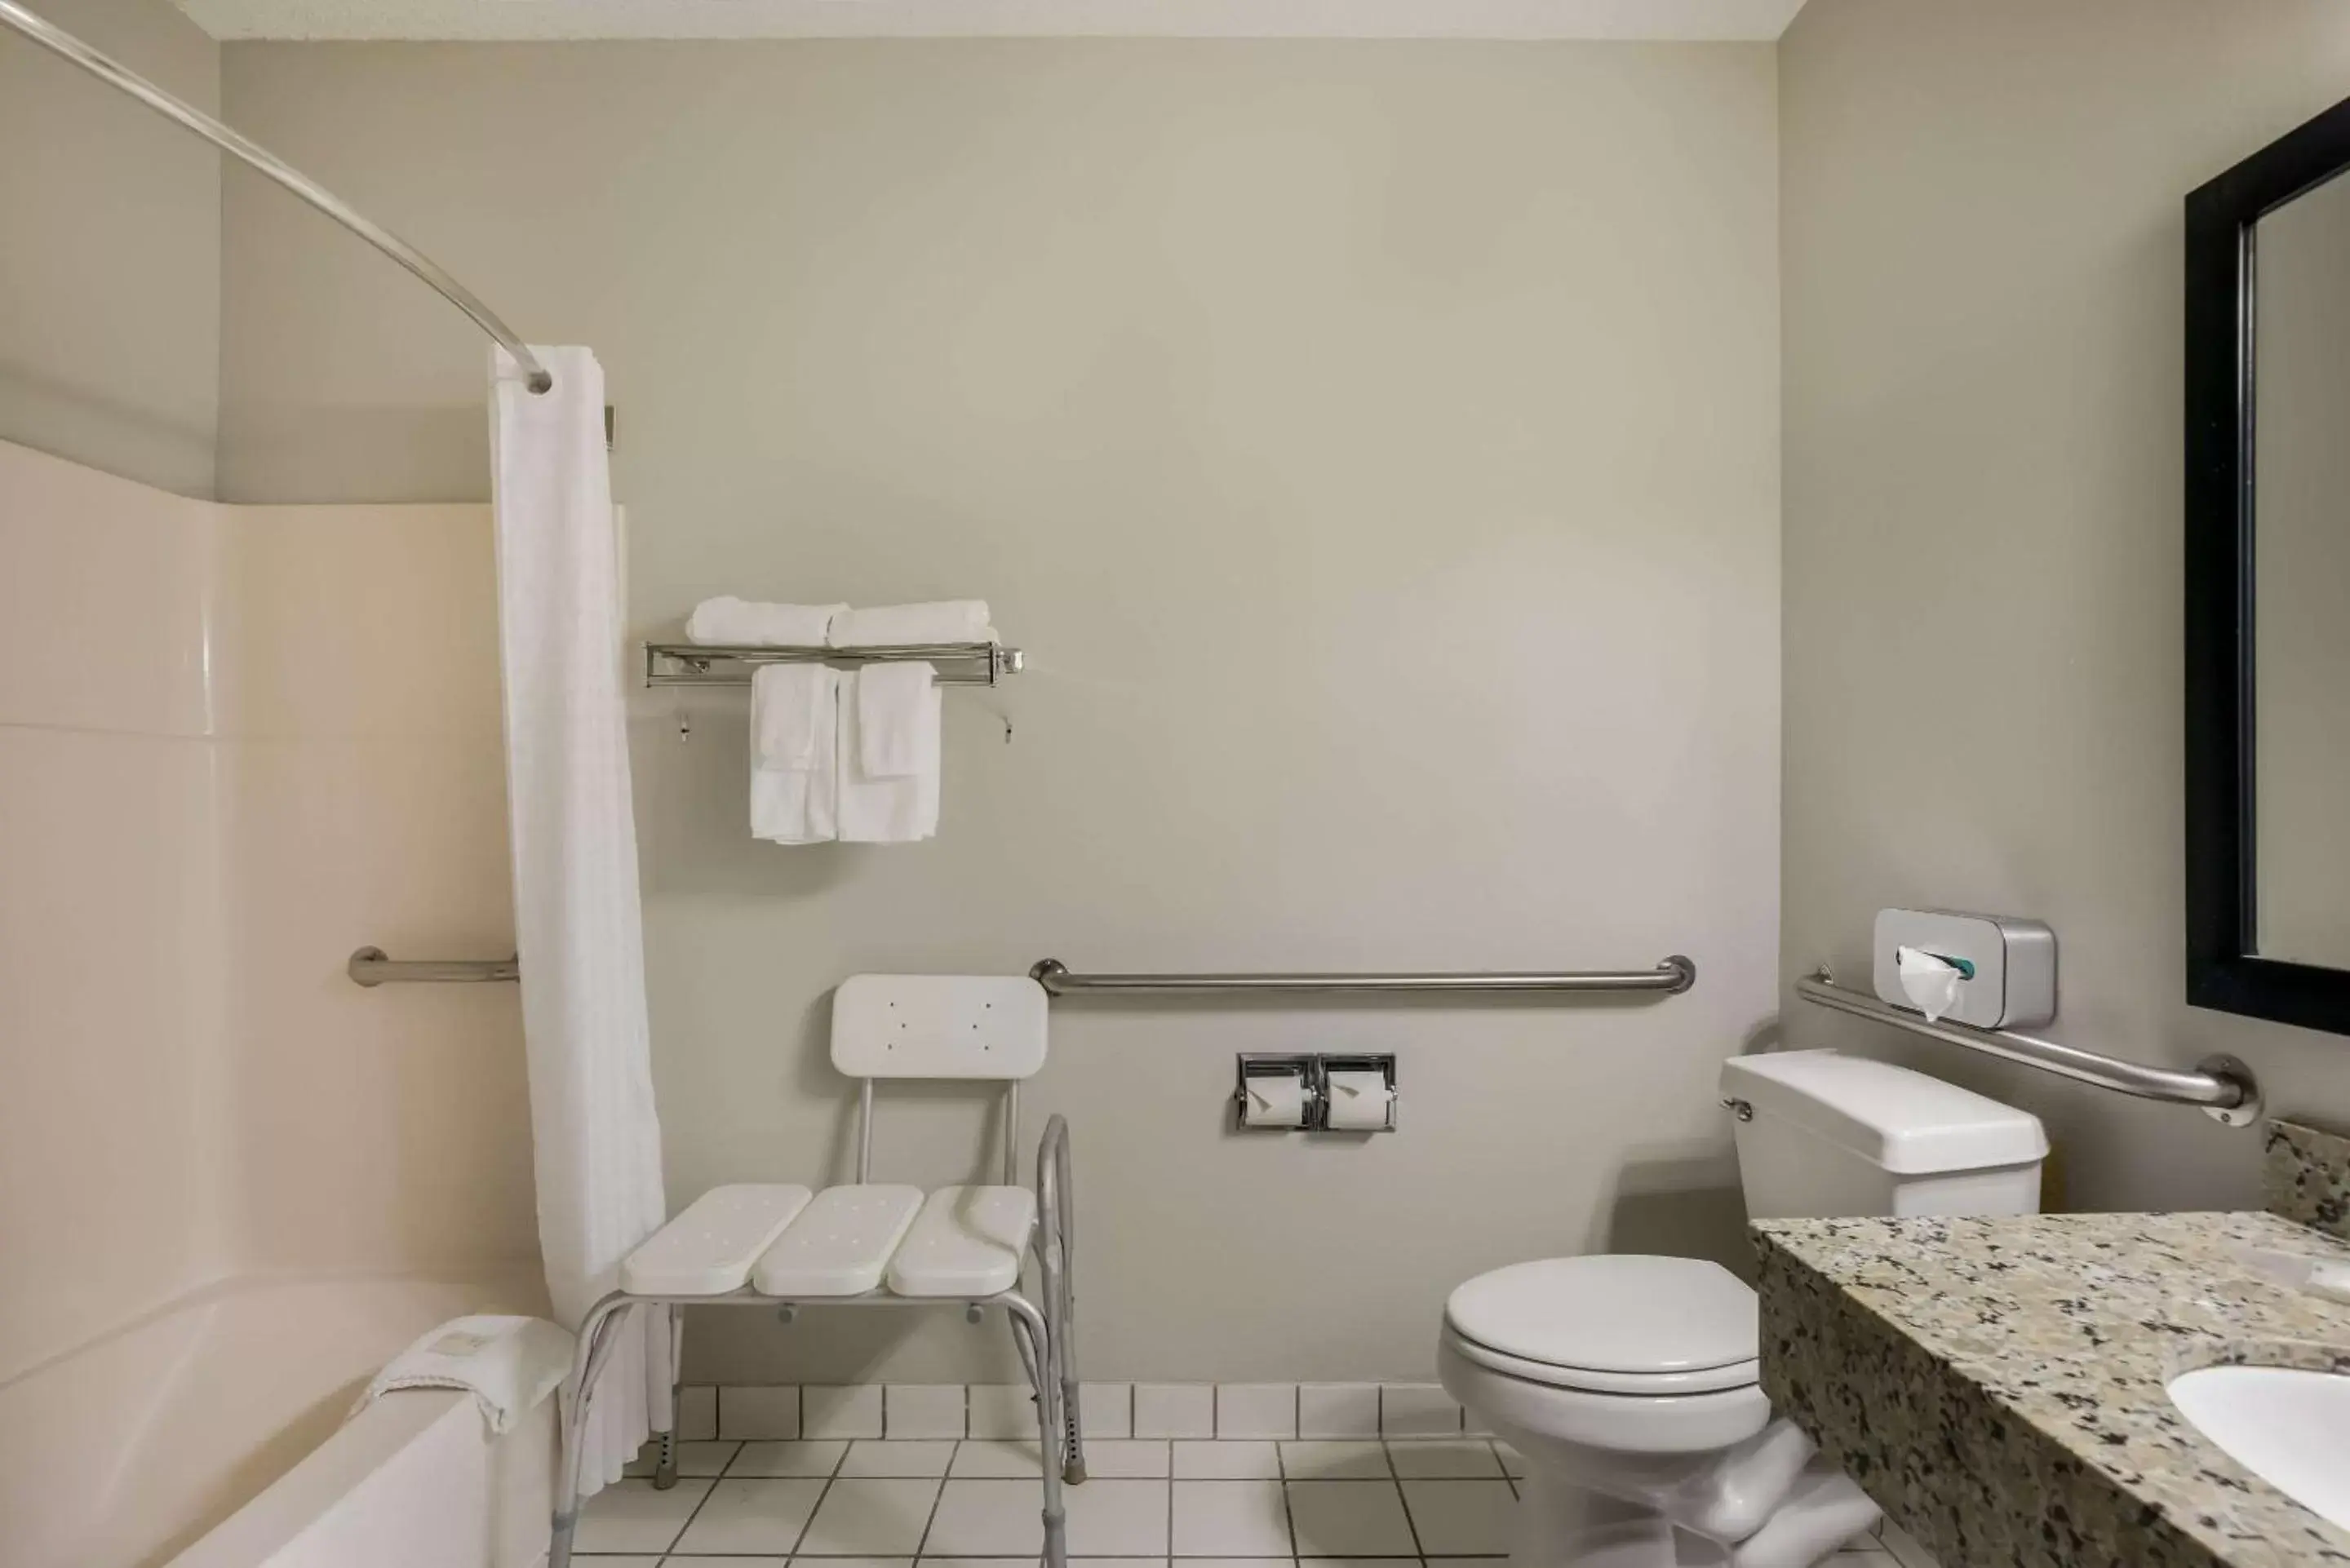 Bedroom, Bathroom in MainStay Suites Joliet I-55